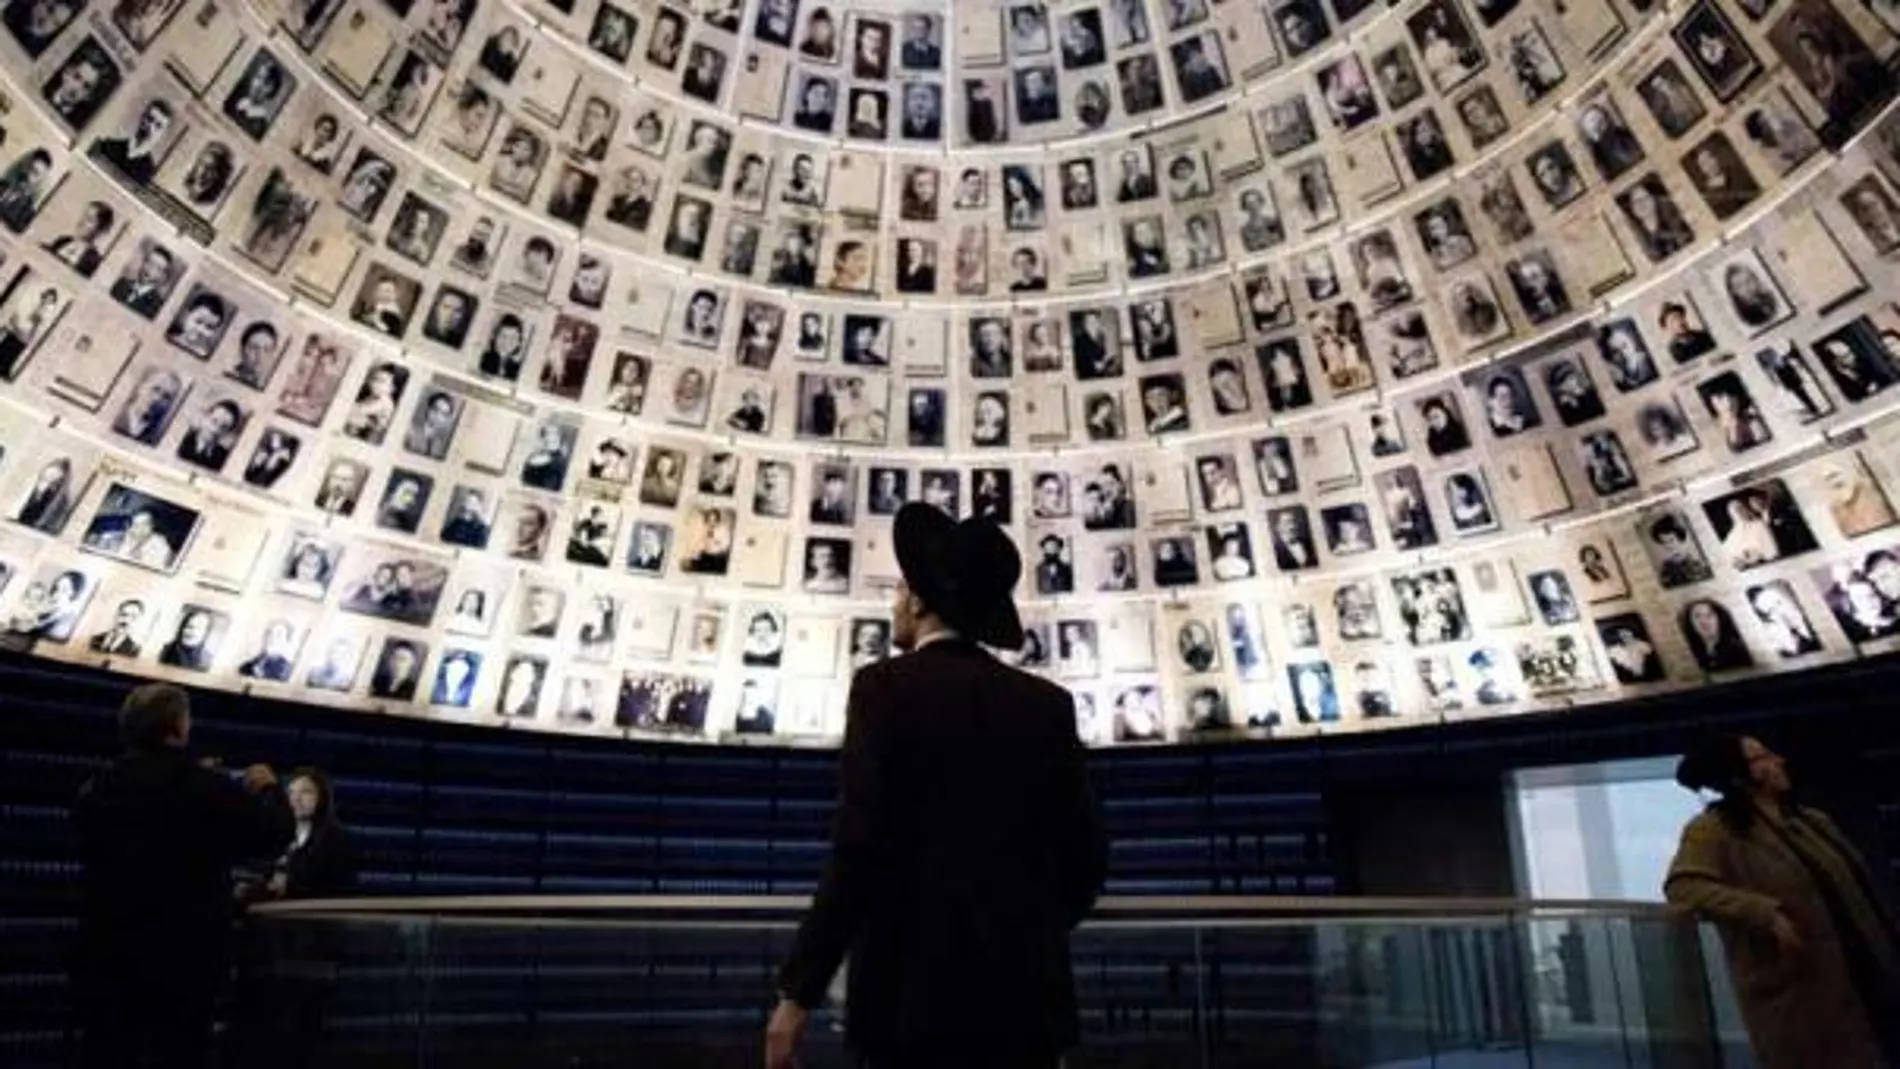 La importancia de enseñar en las escuelas qué fue el Holocausto, recordar para no olvidar